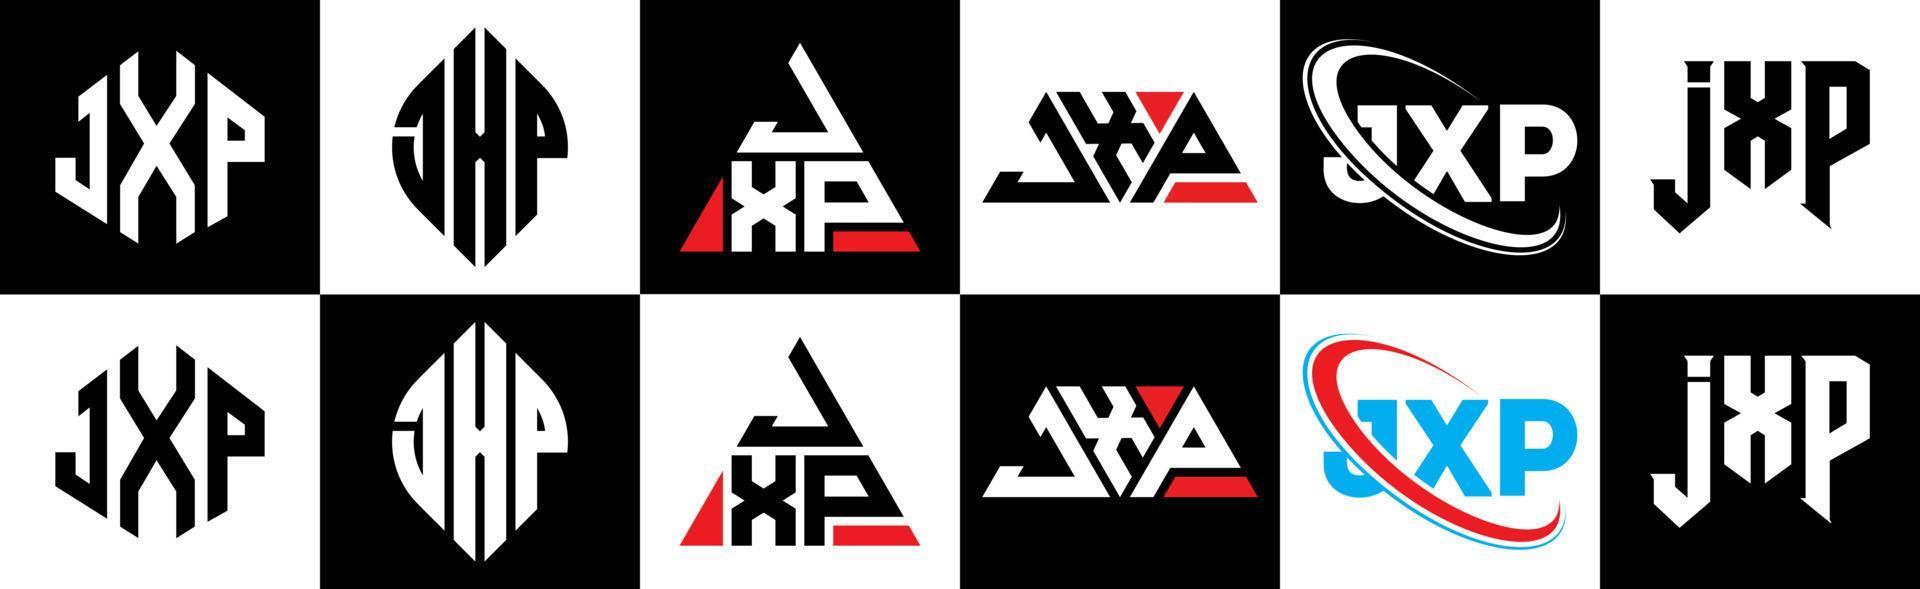 jxp-Buchstaben-Logo-Design in sechs Stilen. jxp Polygon, Kreis, Dreieck, Sechseck, flacher und einfacher Stil mit schwarz-weißem Buchstabenlogo in einer Zeichenfläche. jxp minimalistisches und klassisches Logo vektor